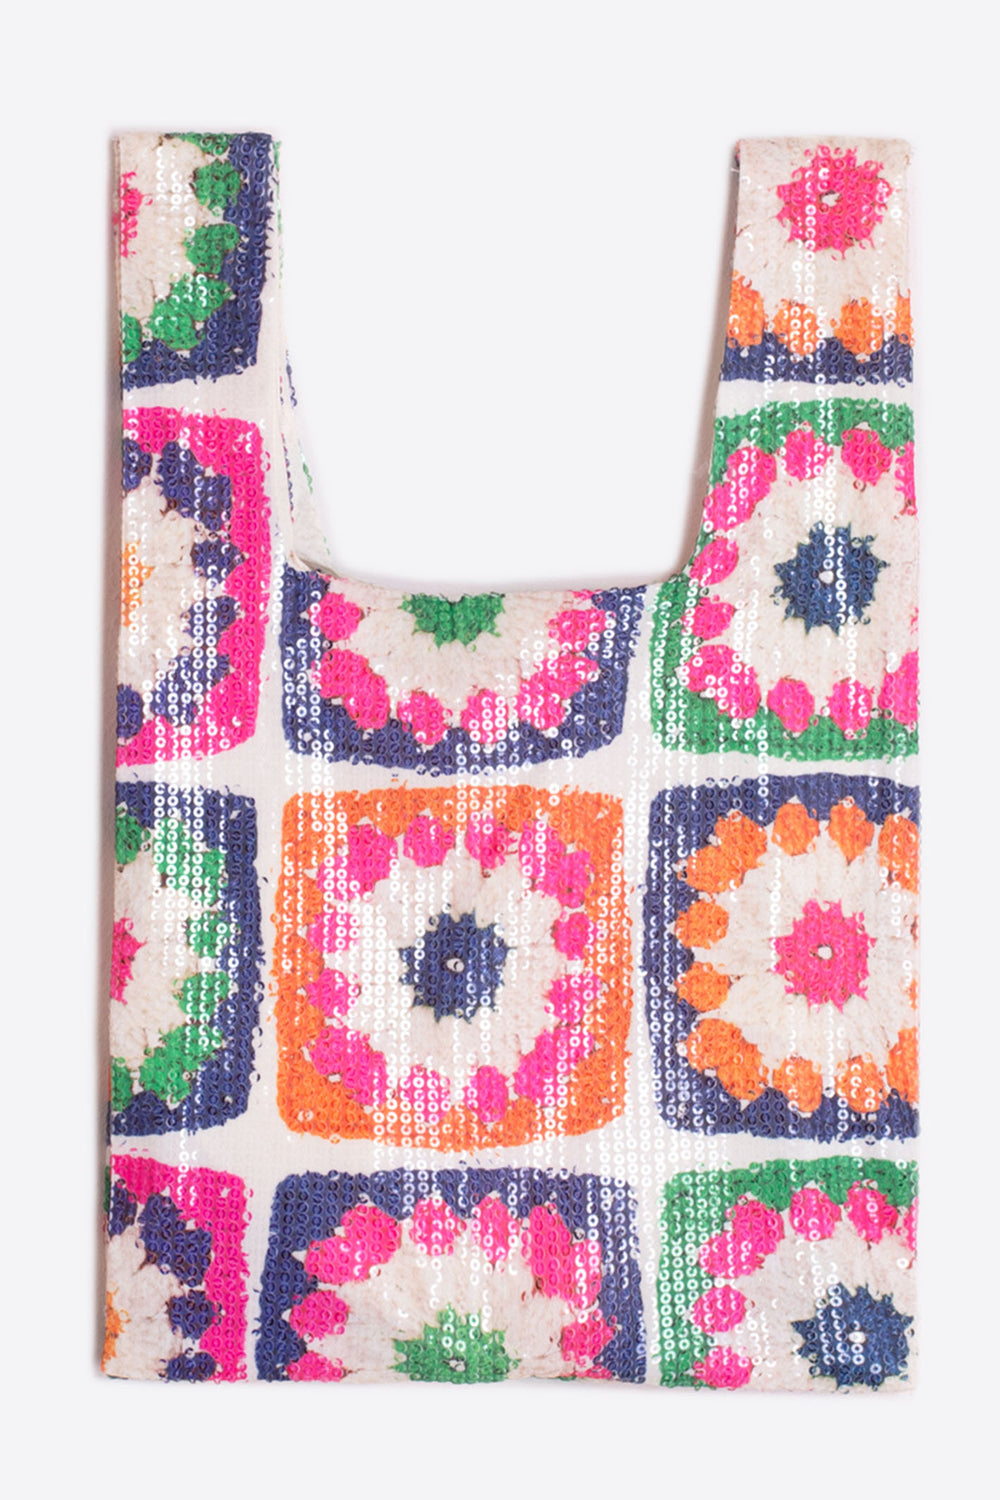 Vilagallo 31293 White Multicolour Sequin Crochet Look Bag - Olivia Grace Fashion